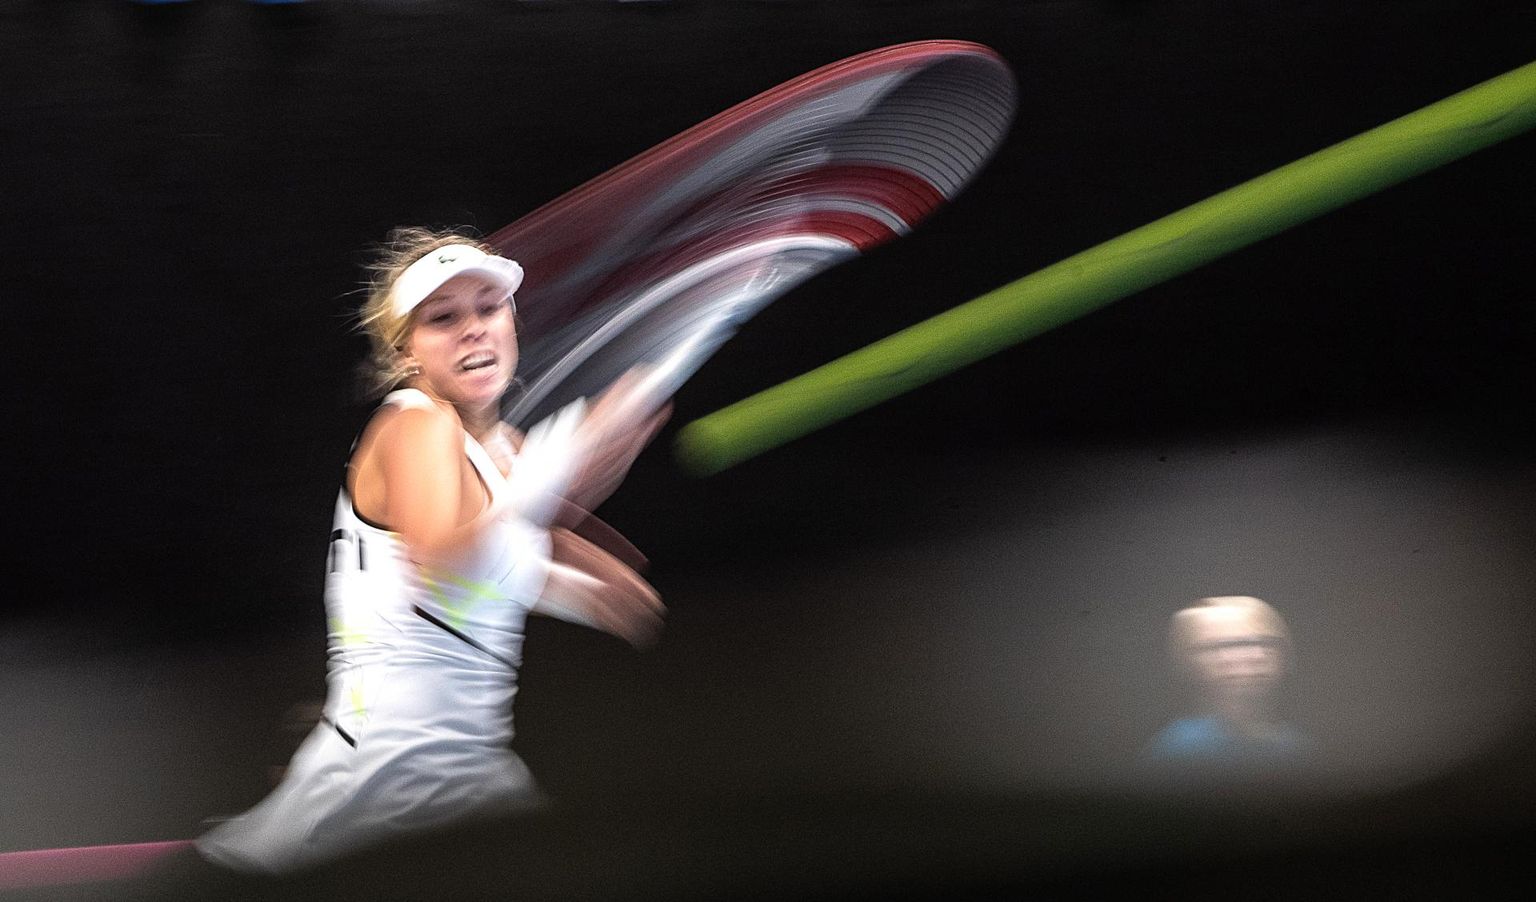 Parima spordifoto võitis Postimehe fotoreporter Tairo Lutter fotoga «Esinumber». Foto on tehtud Eesti tennise esinumbrist Anett Kontaveidist kodusel Fed Cupi turniiril. 